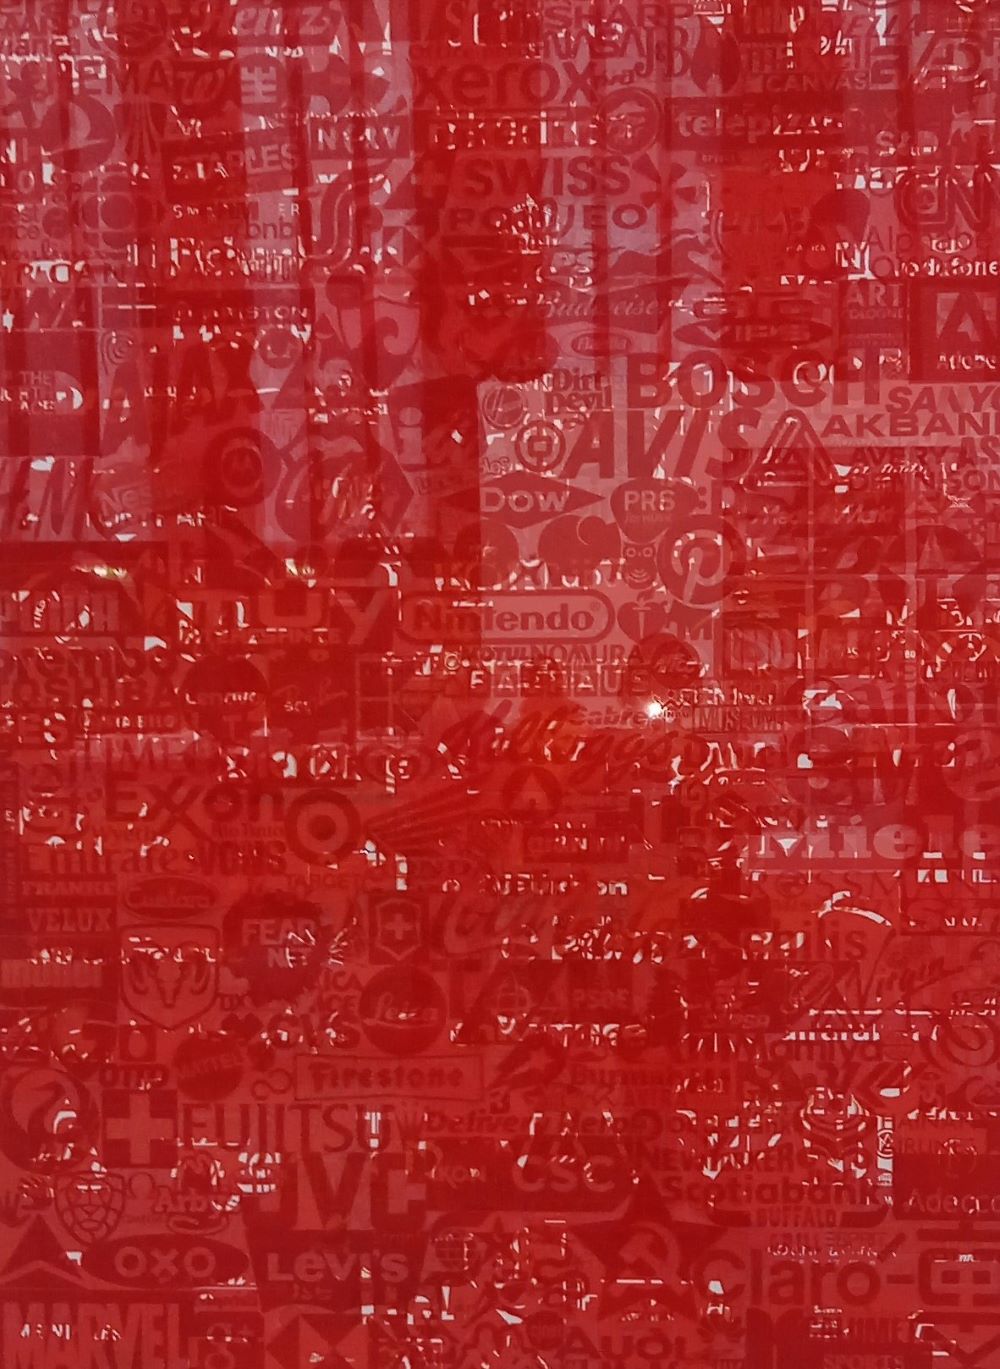 Rotes Plakat mit Logos  von der spanischen Künstlerin Cristina Lucas